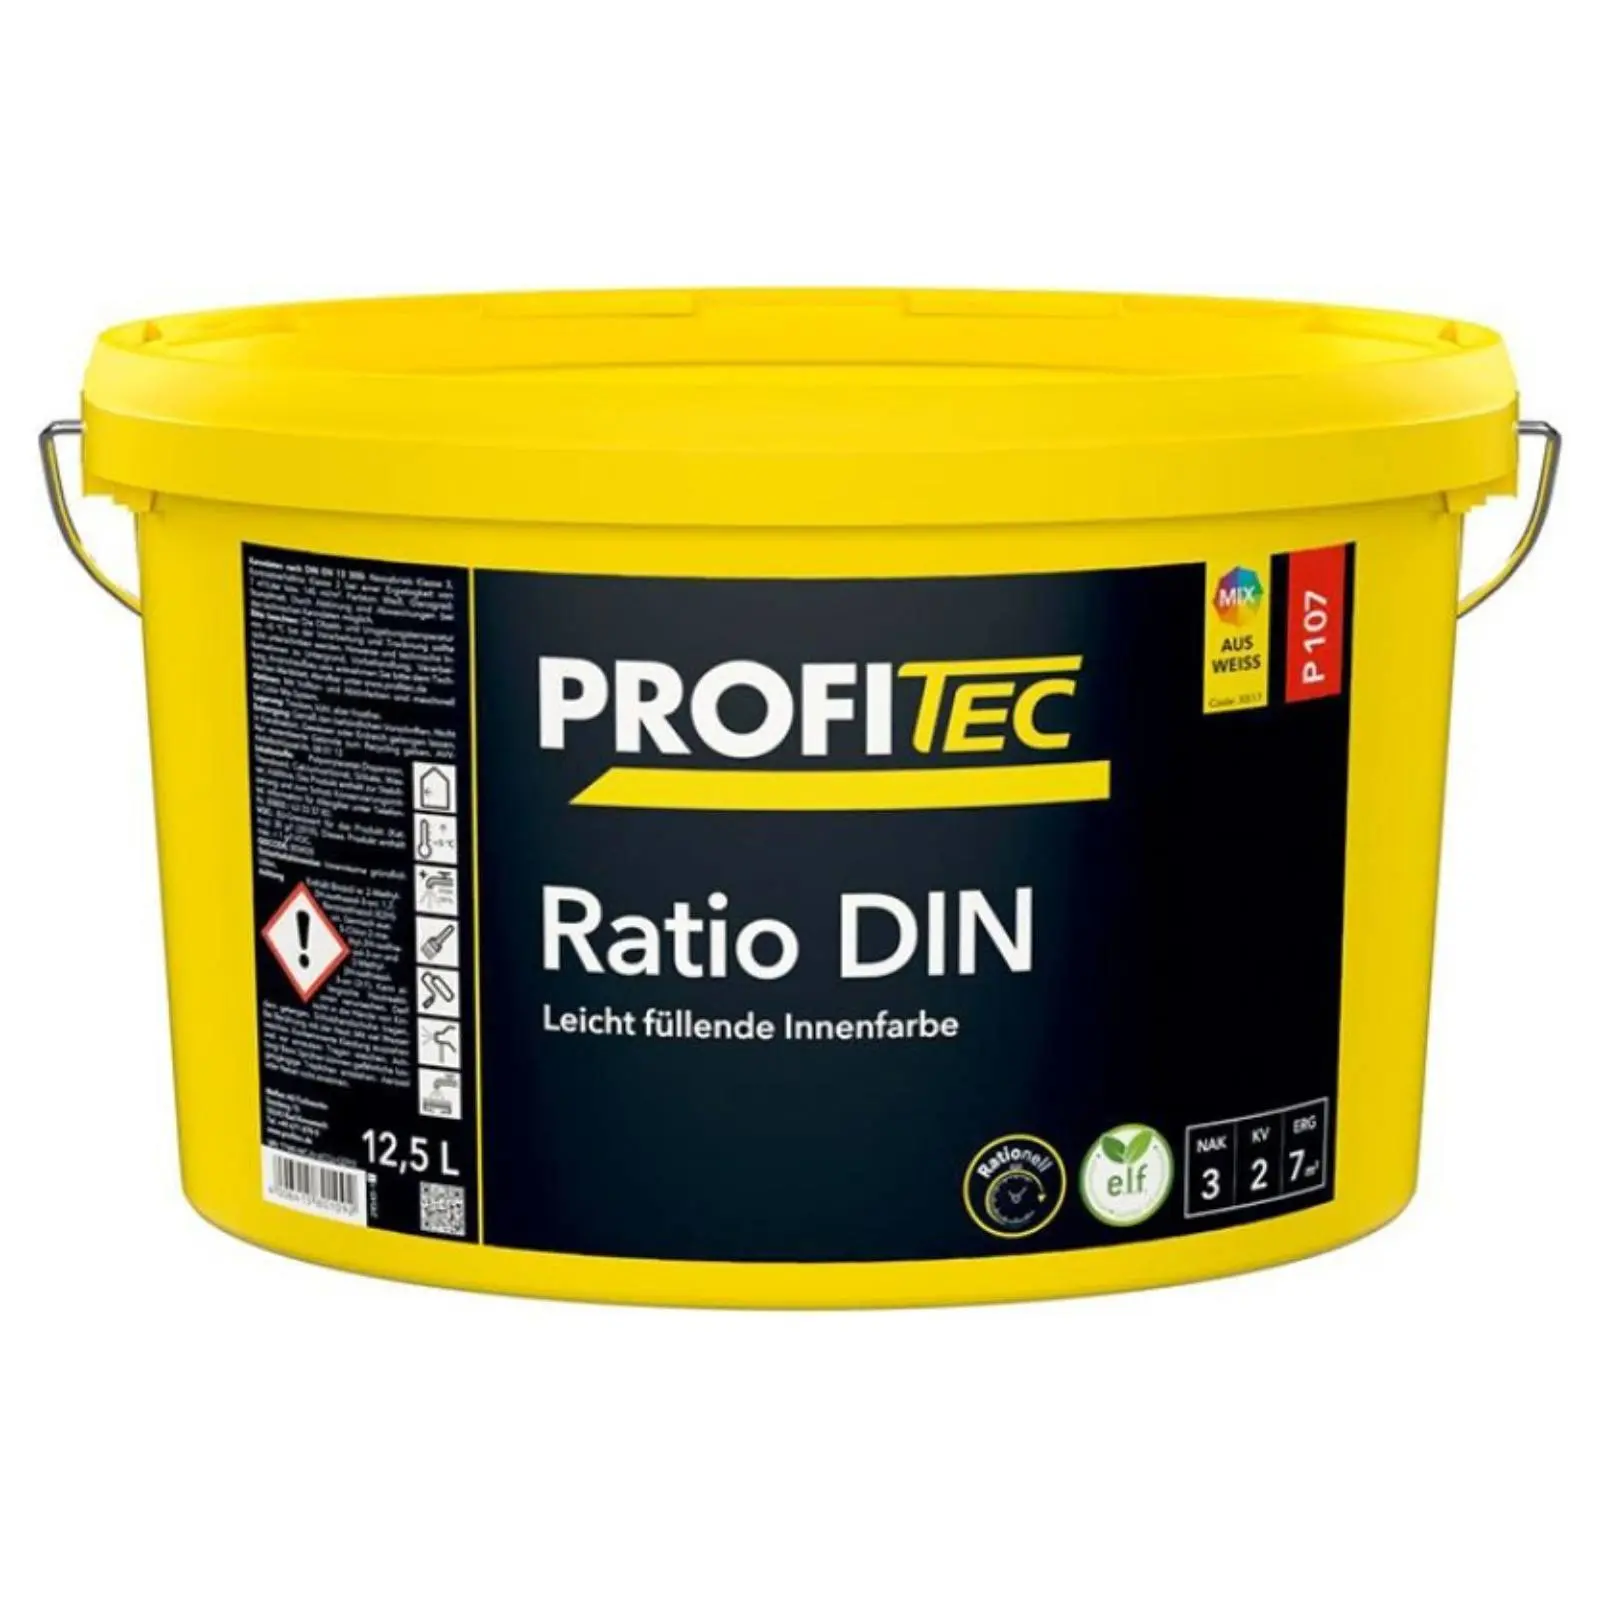 ProfiTec Ratio DIN P107, weiß, stumpfmatt, 12,5l